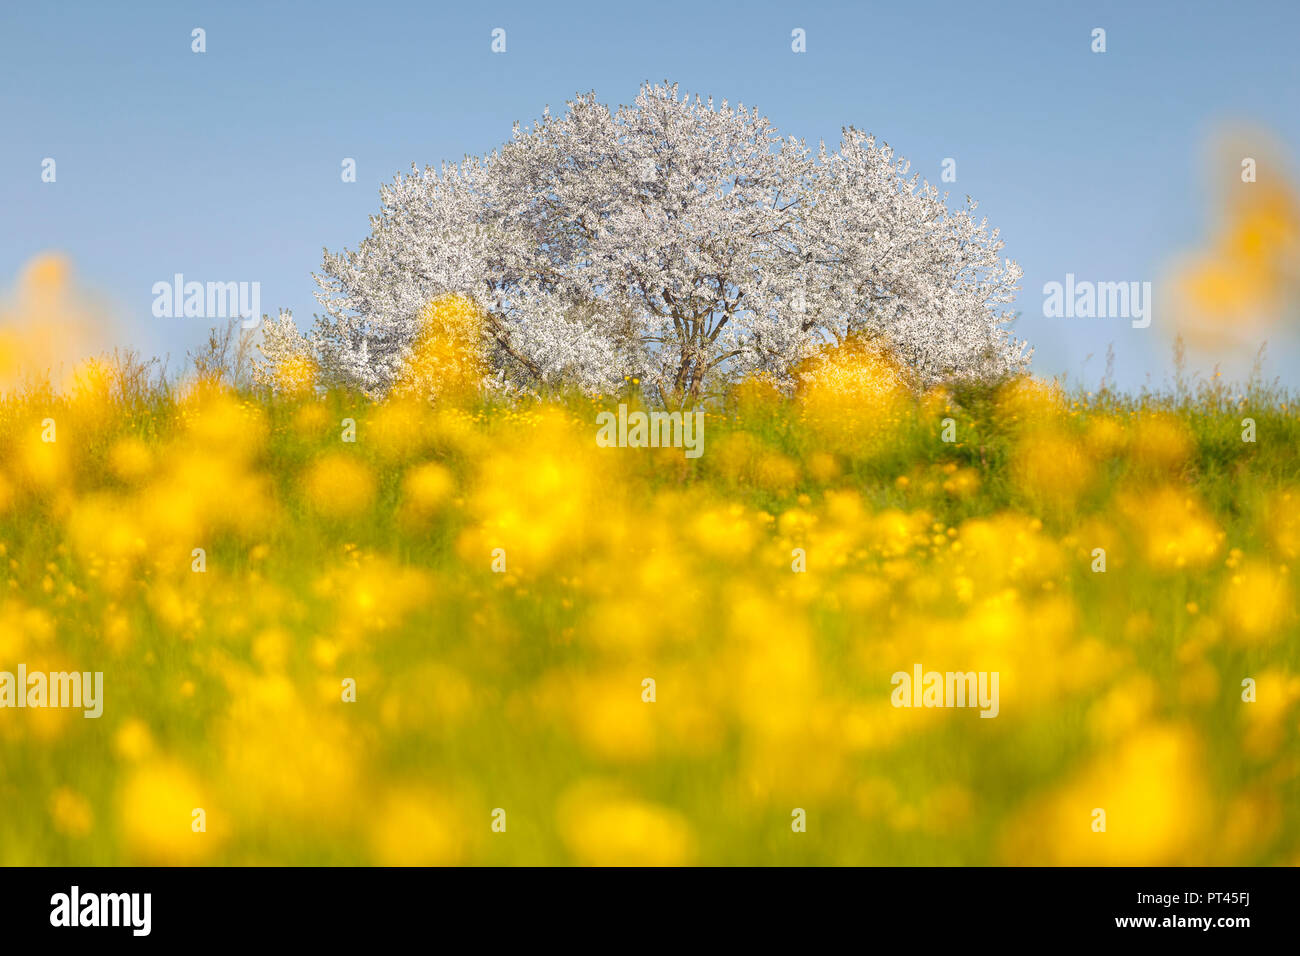 Renoncules (Ranunculus) flowers frame le plus plus grand cerisier en Italie dans un temps de printemps, Vergo, Zoccorino Brianza Besana, dans la province de Monza et Brianza, Lombardie, Italie, Europe Banque D'Images